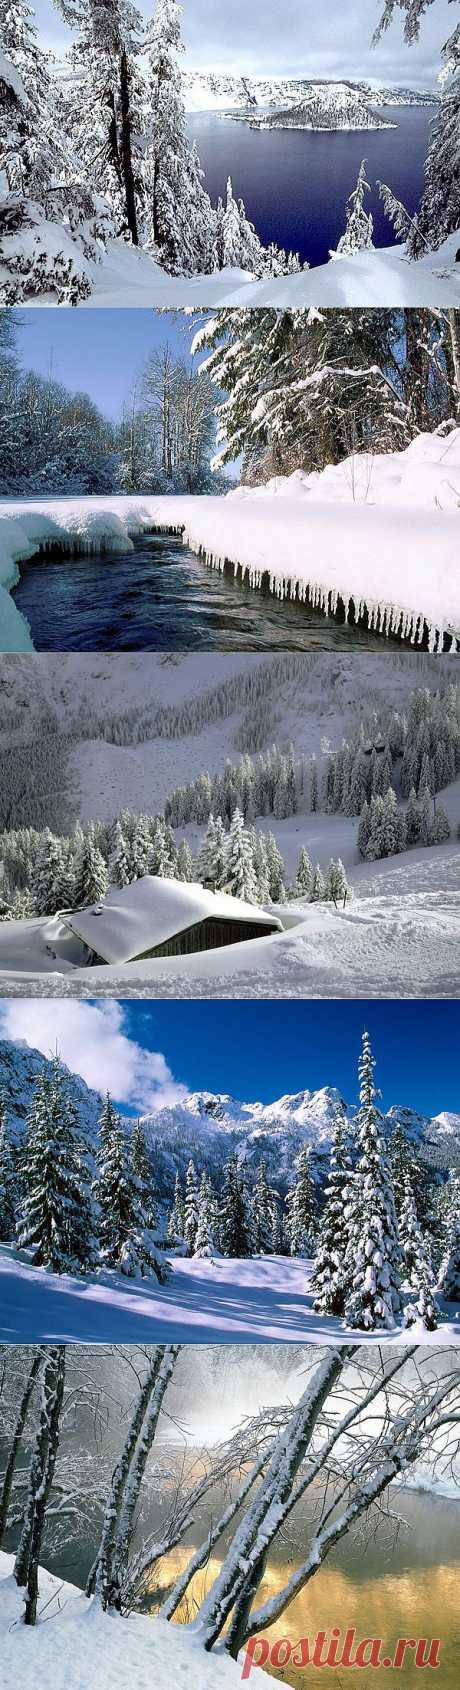 Природа, Красивые зимние пейзажи, 3578, зима, , basik.ru